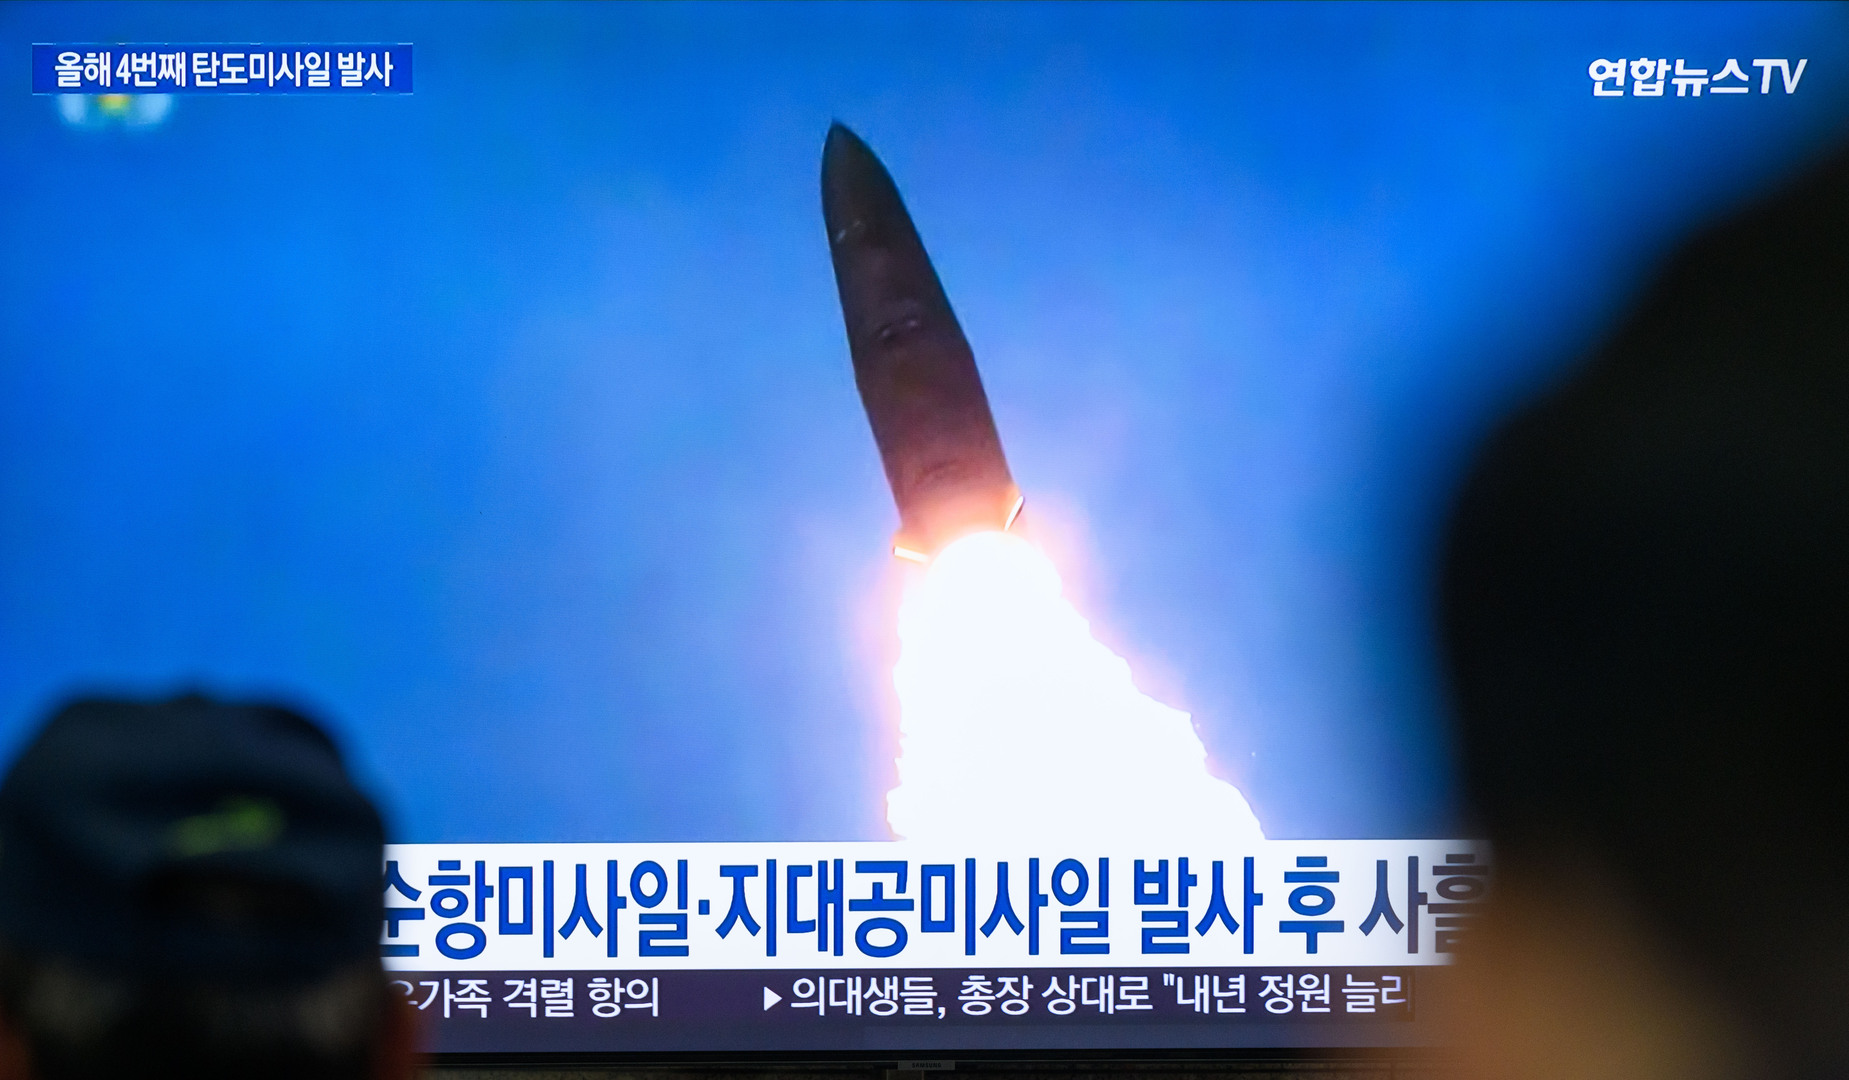 سيئول: كوريا الشمالية أطلقت صاروخا باليستيا تجاه البحر الشرقي